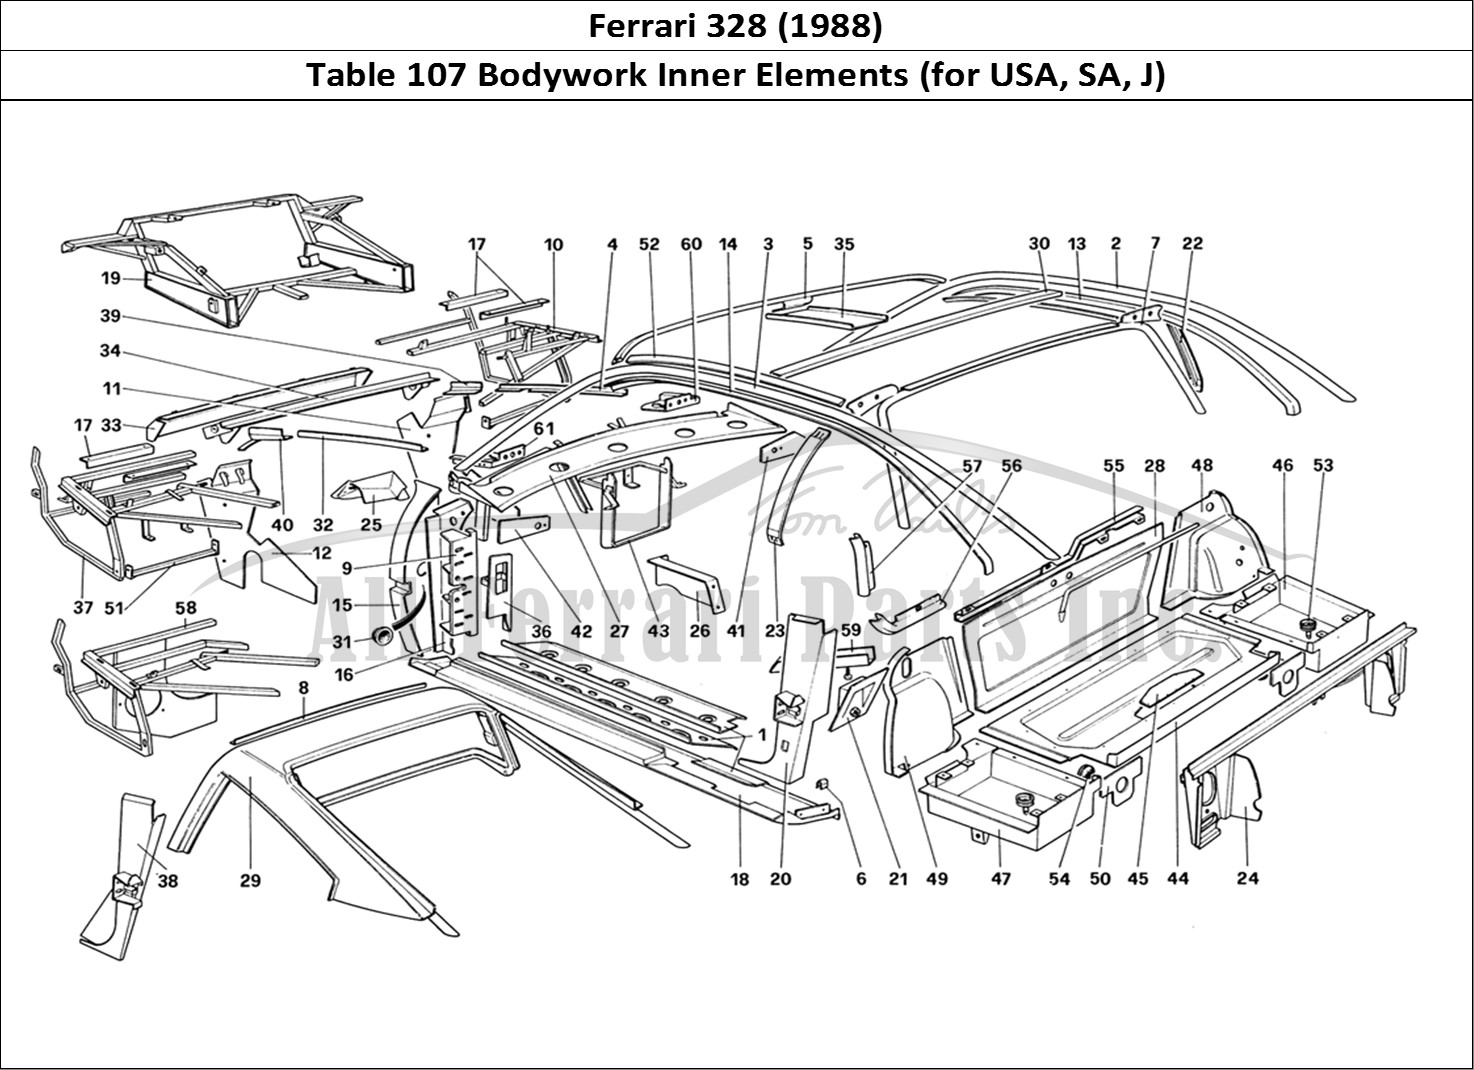 Buy original Ferrari 328 (1988) 107 Bodywork Inner Elements (for USA